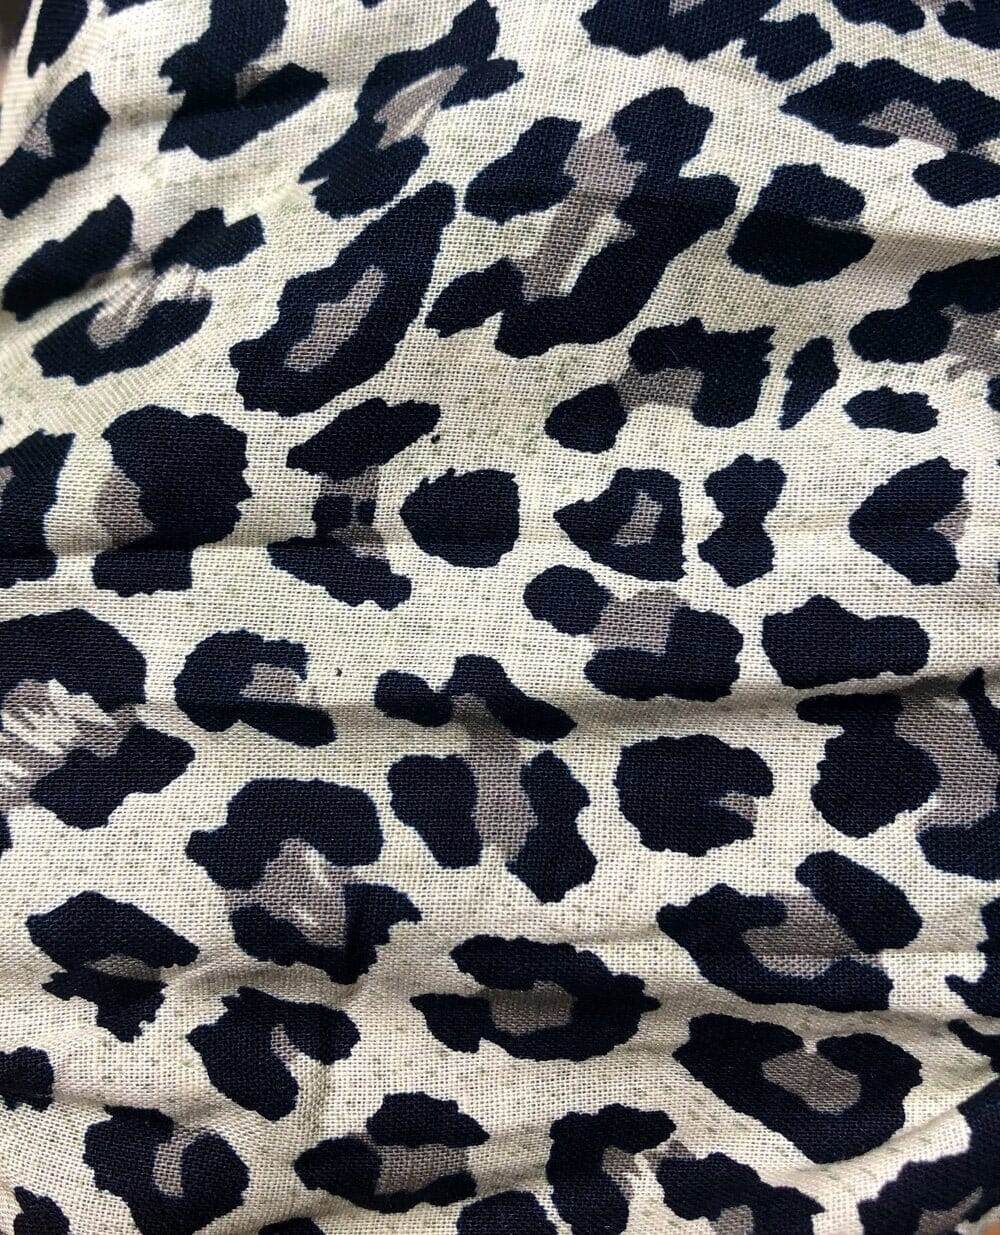 Leopard Print Cotton Face Mask by Love Khaos